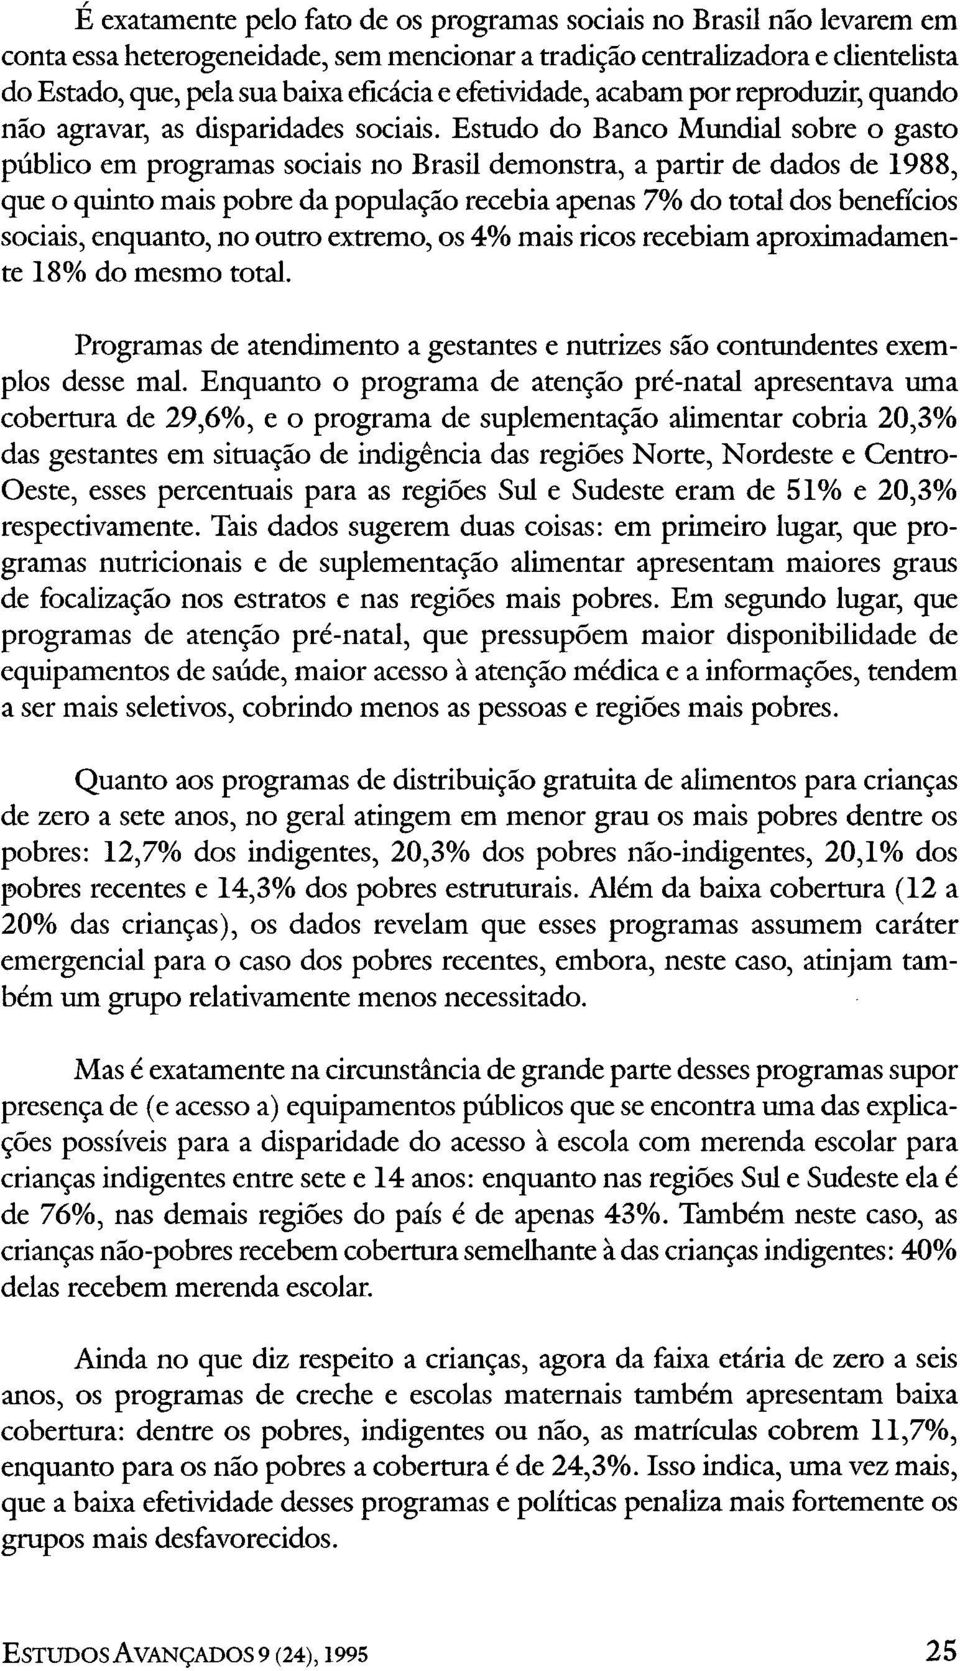 Estudo do Banco Mundial sobre o gasto público em programas sociais no Brasil demonstra, a partir de dados de 1988, que o quinto mais pobre da população recebia apenas 7% do total dos benefícios